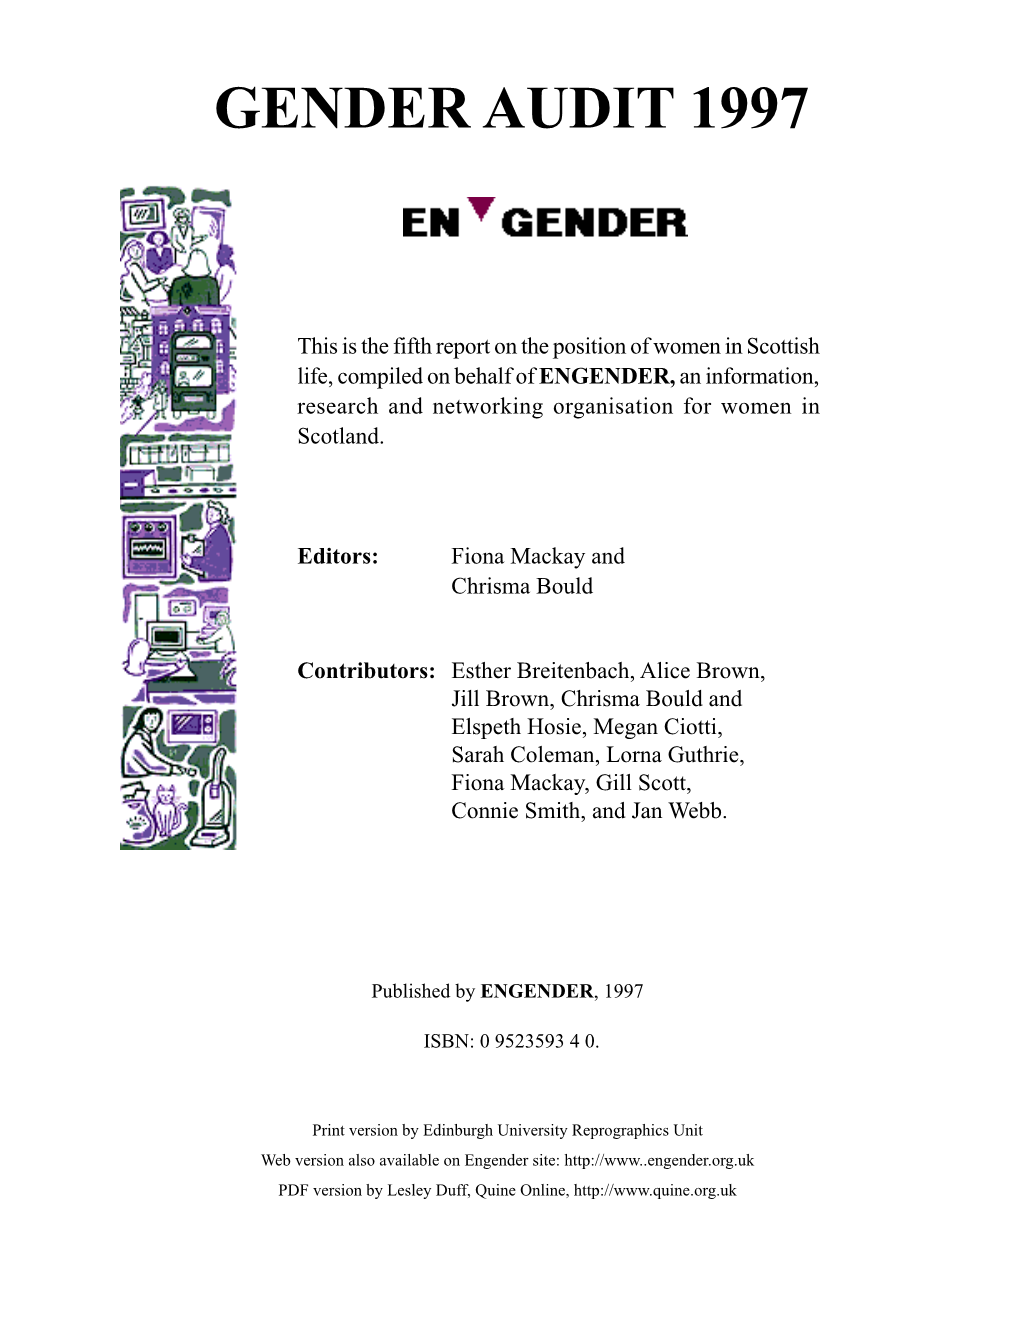 Gender Audit 1997